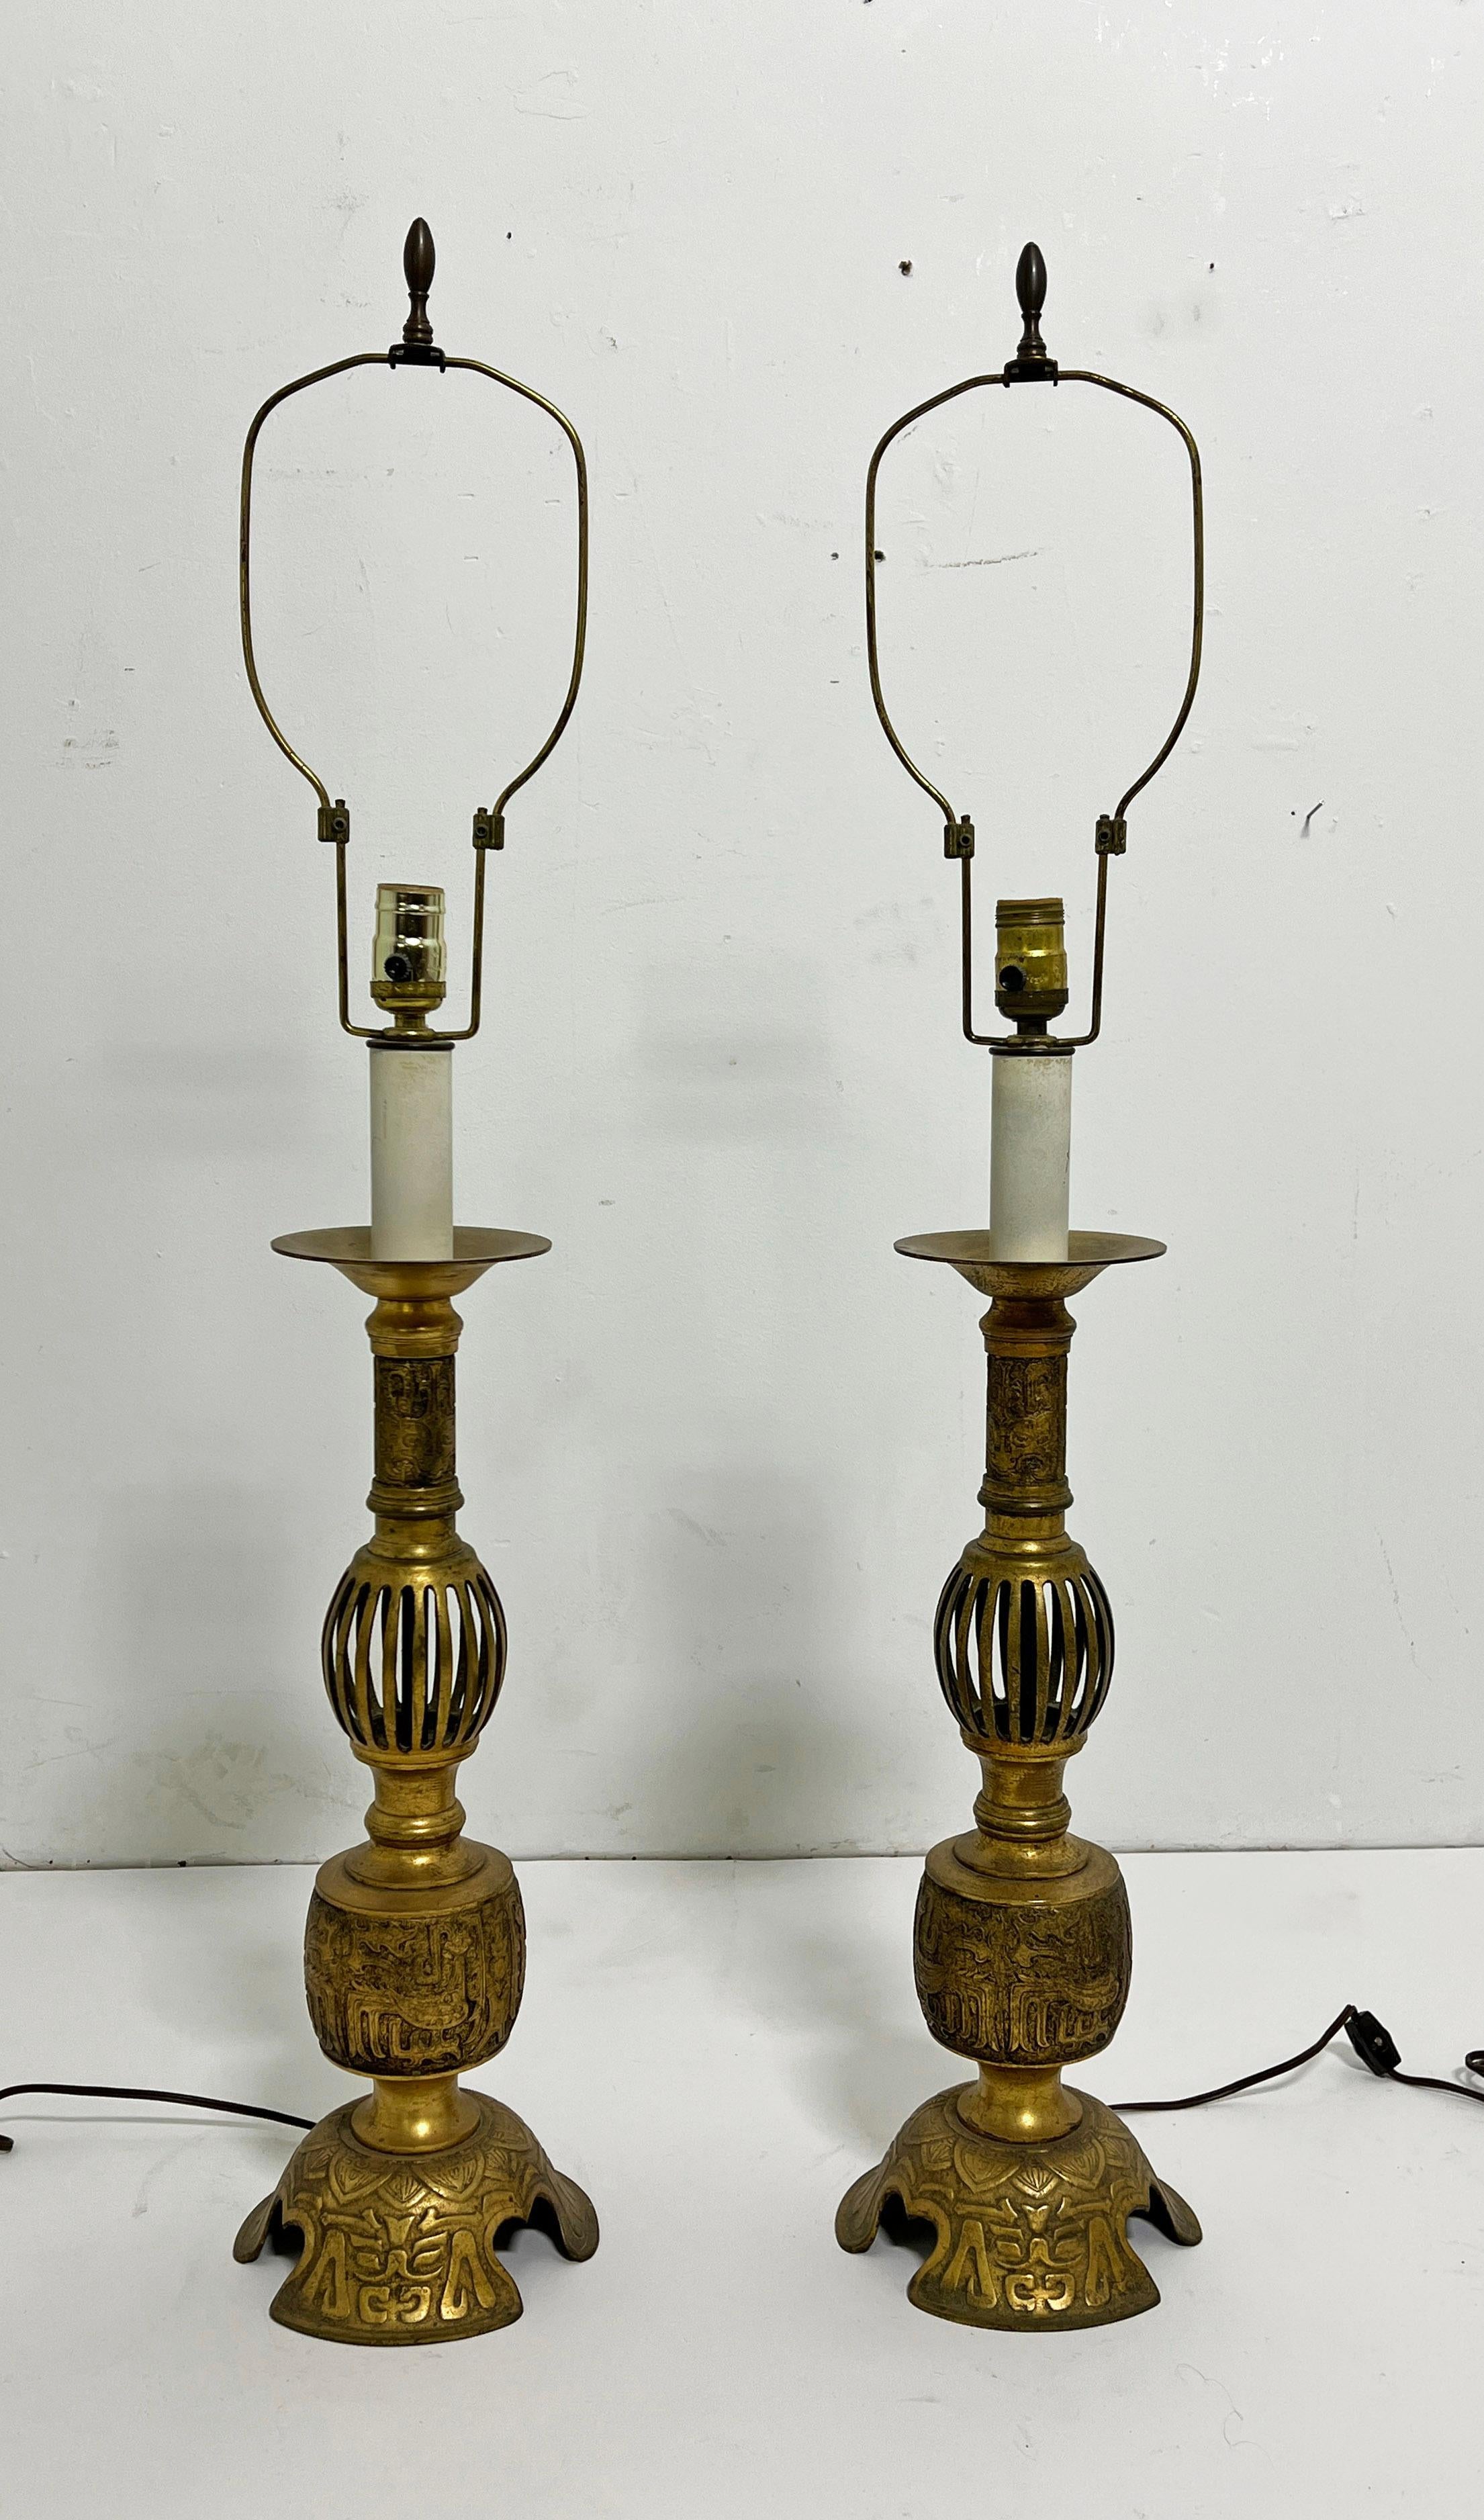 Paar antike chinesische Kerzenständer aus Bronze, umgewandelt in Lampen, ca. Ende 1800. 

38